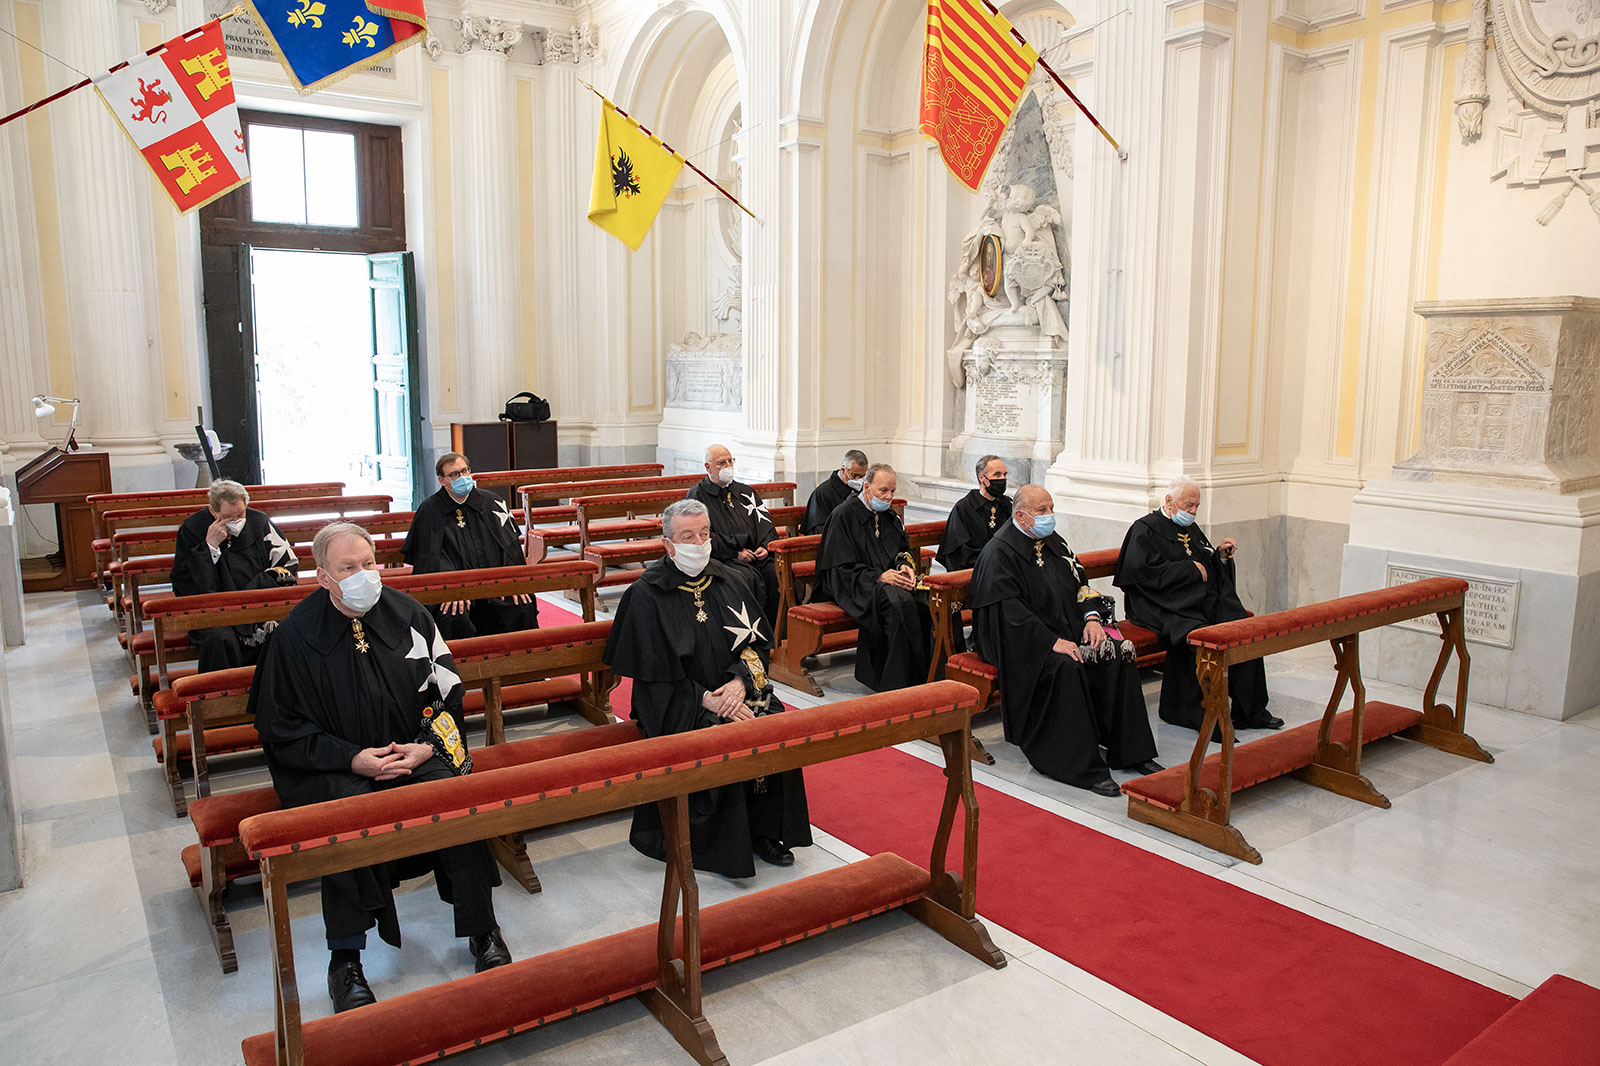 Cardinal Tomasi meets Professed members